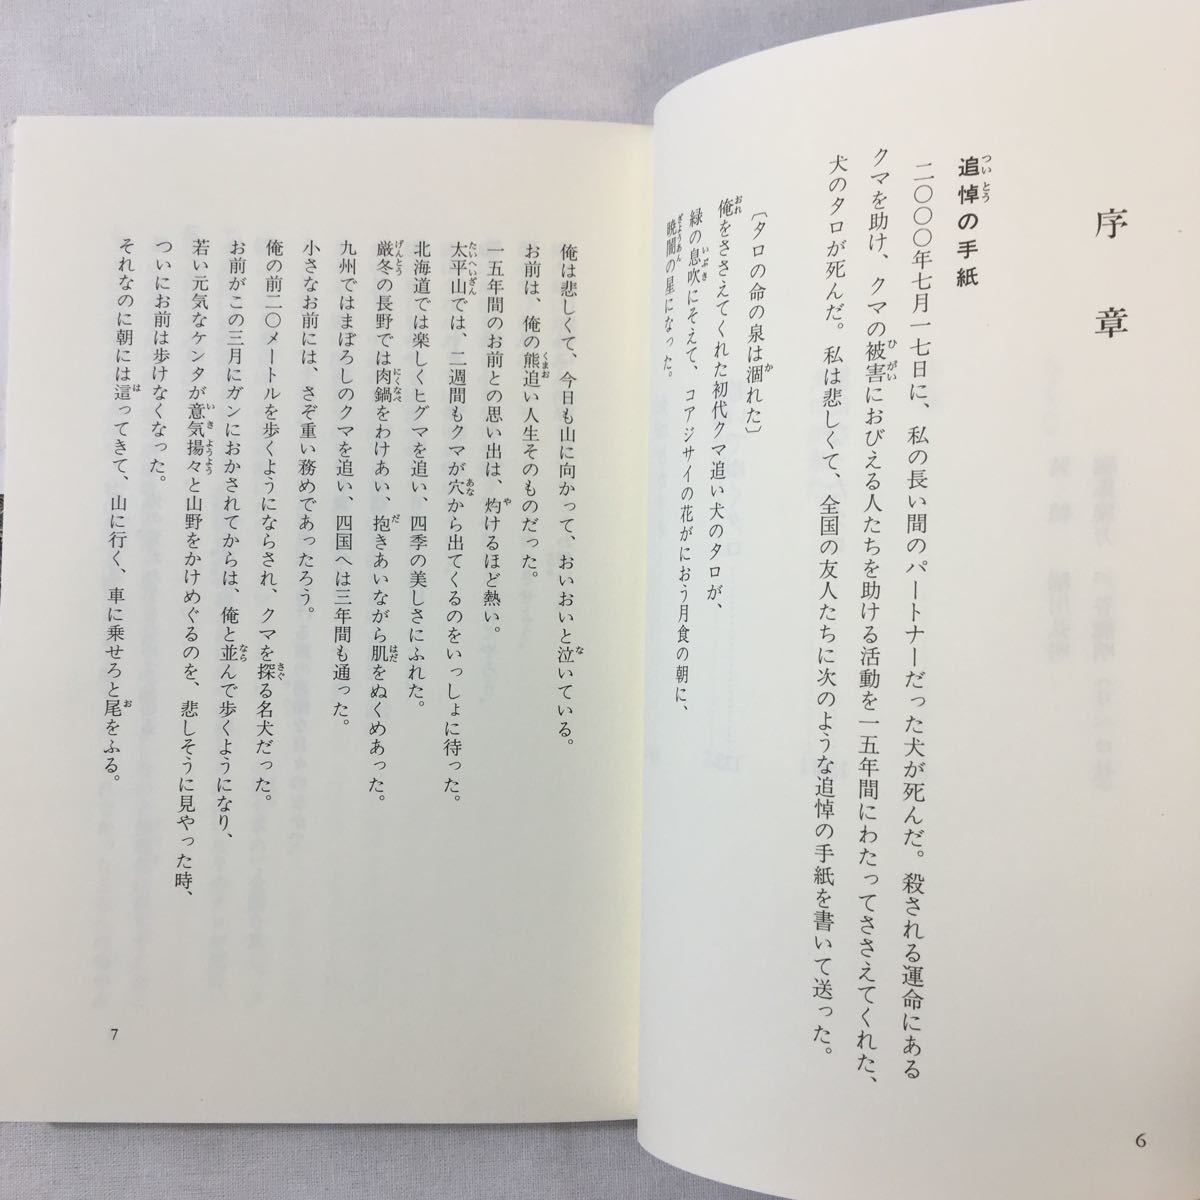 zaa-343♪クマ追い犬タロ (ノンフィクション・Books) 単行本 2001/10/1 米田 一彦 (著)